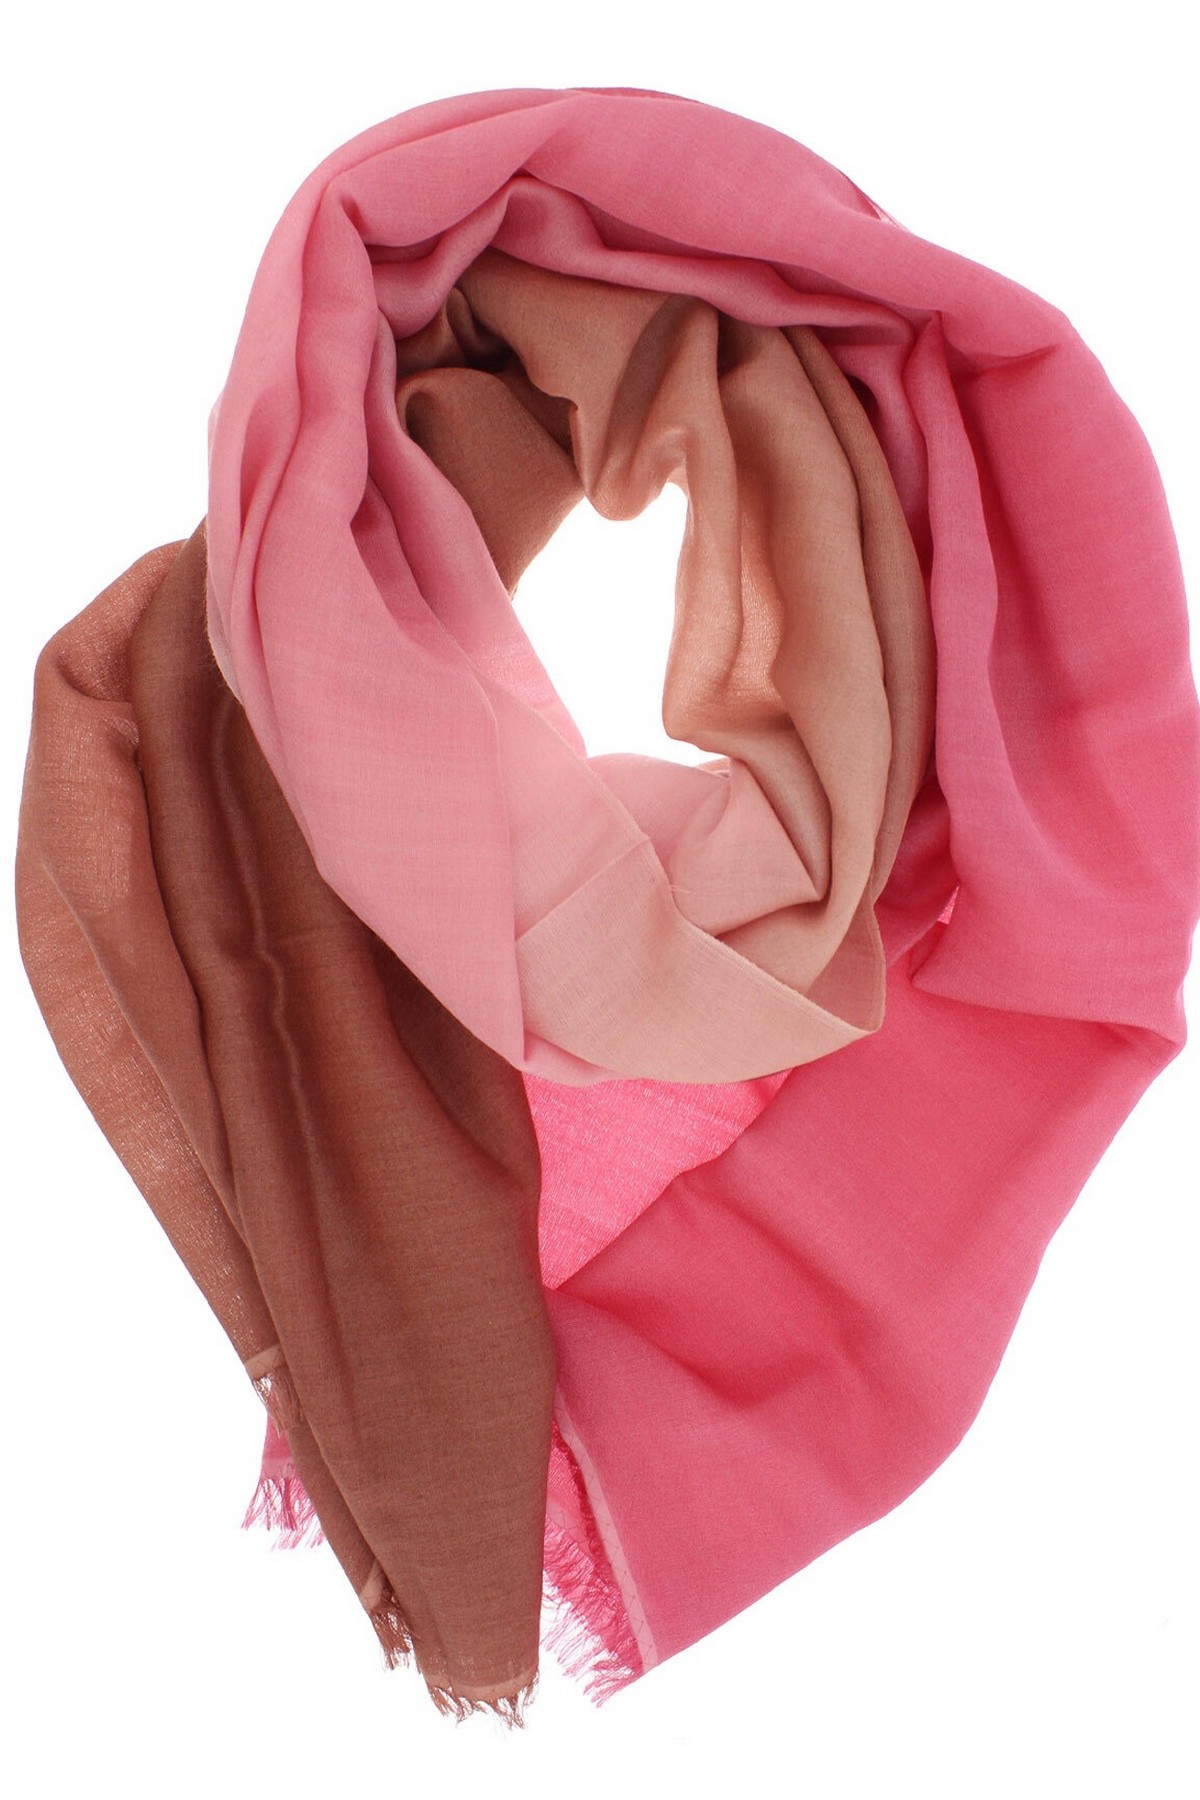 Pashmina tie & dye in de kleur roze van het merk Natan